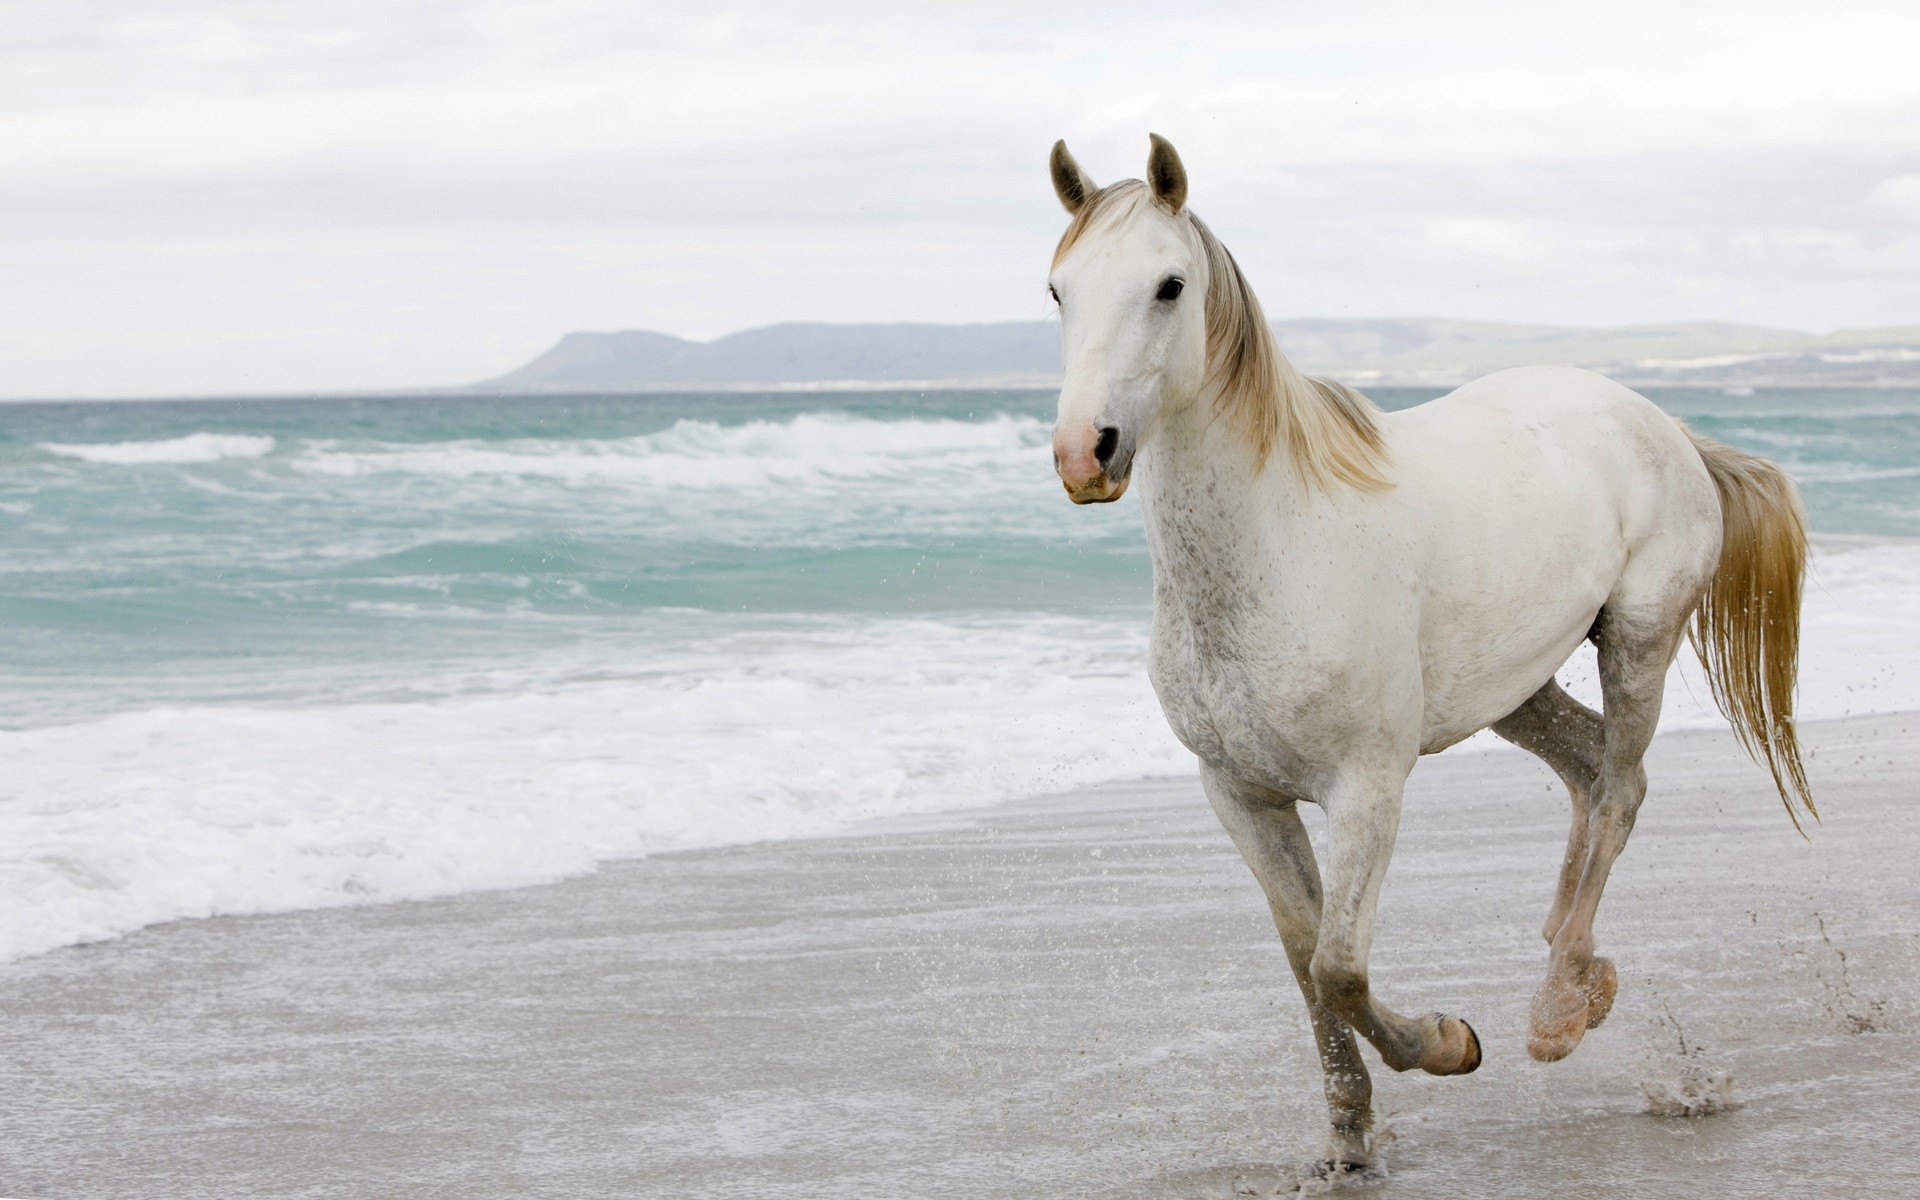 Картинки Белый конь, песок, море, побег фото и обои на рабочий стол